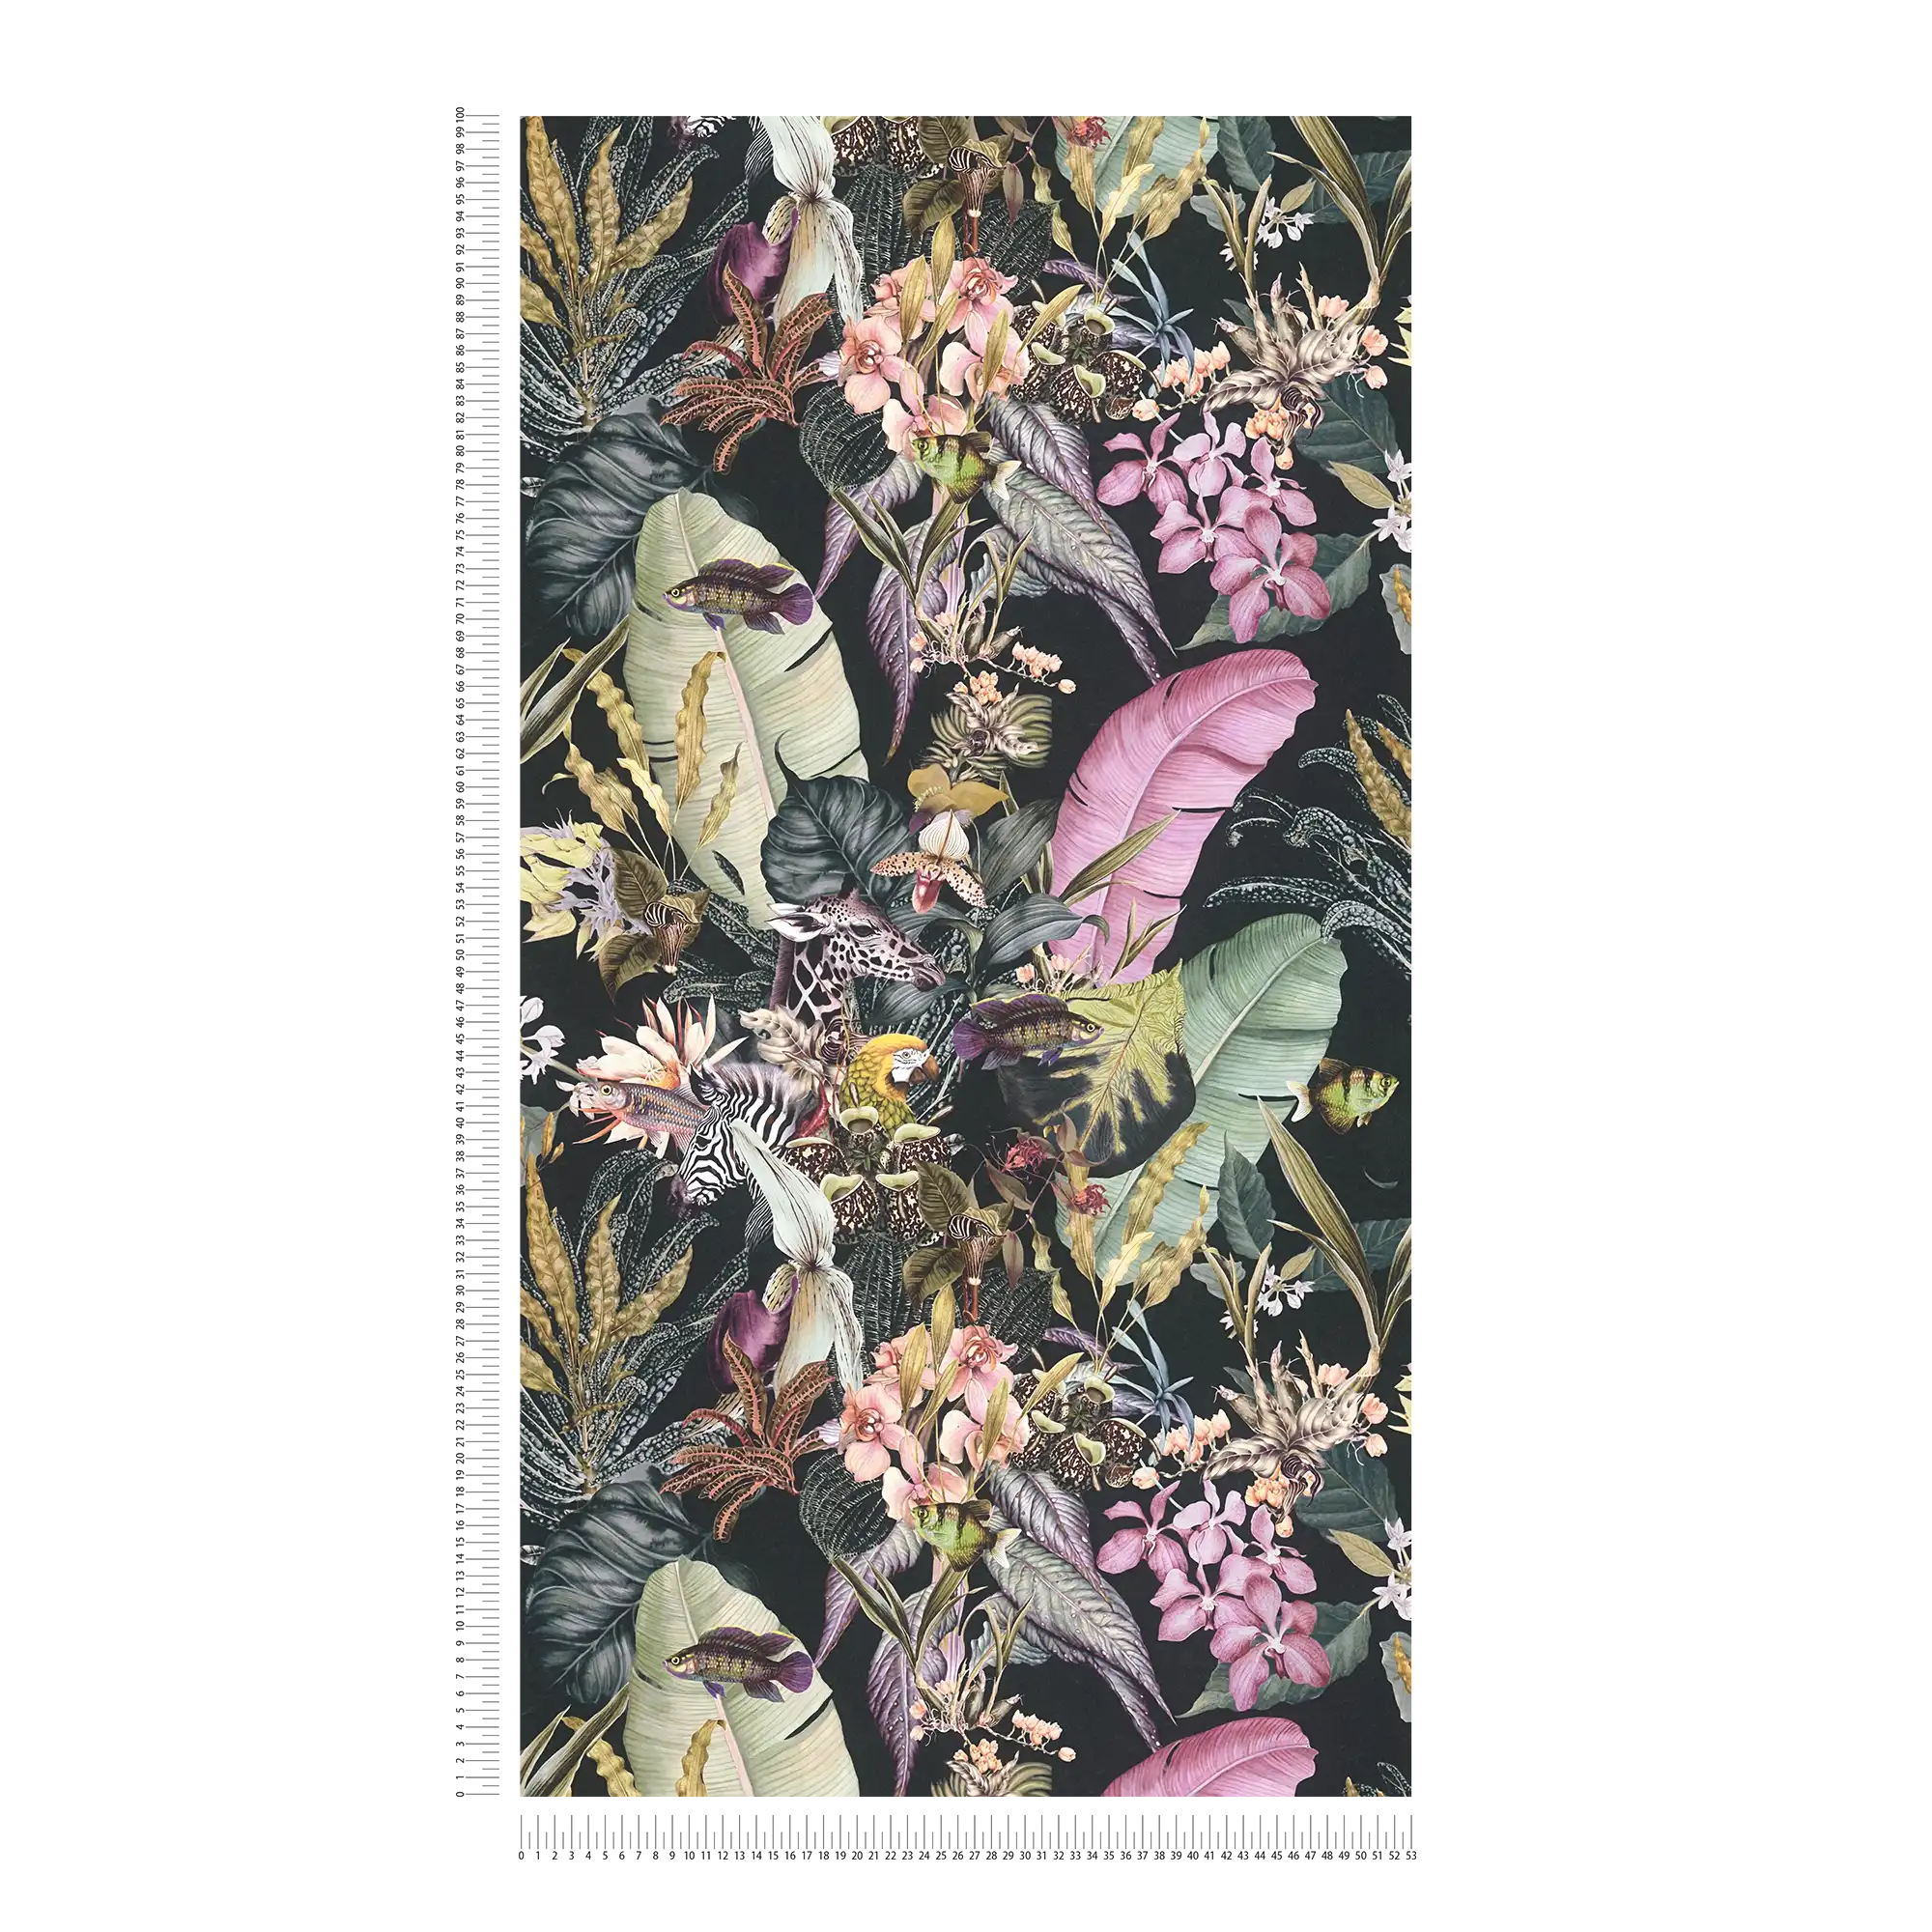             Blumentapete Flora & Fauna mit schwarzem Hintergrund
        